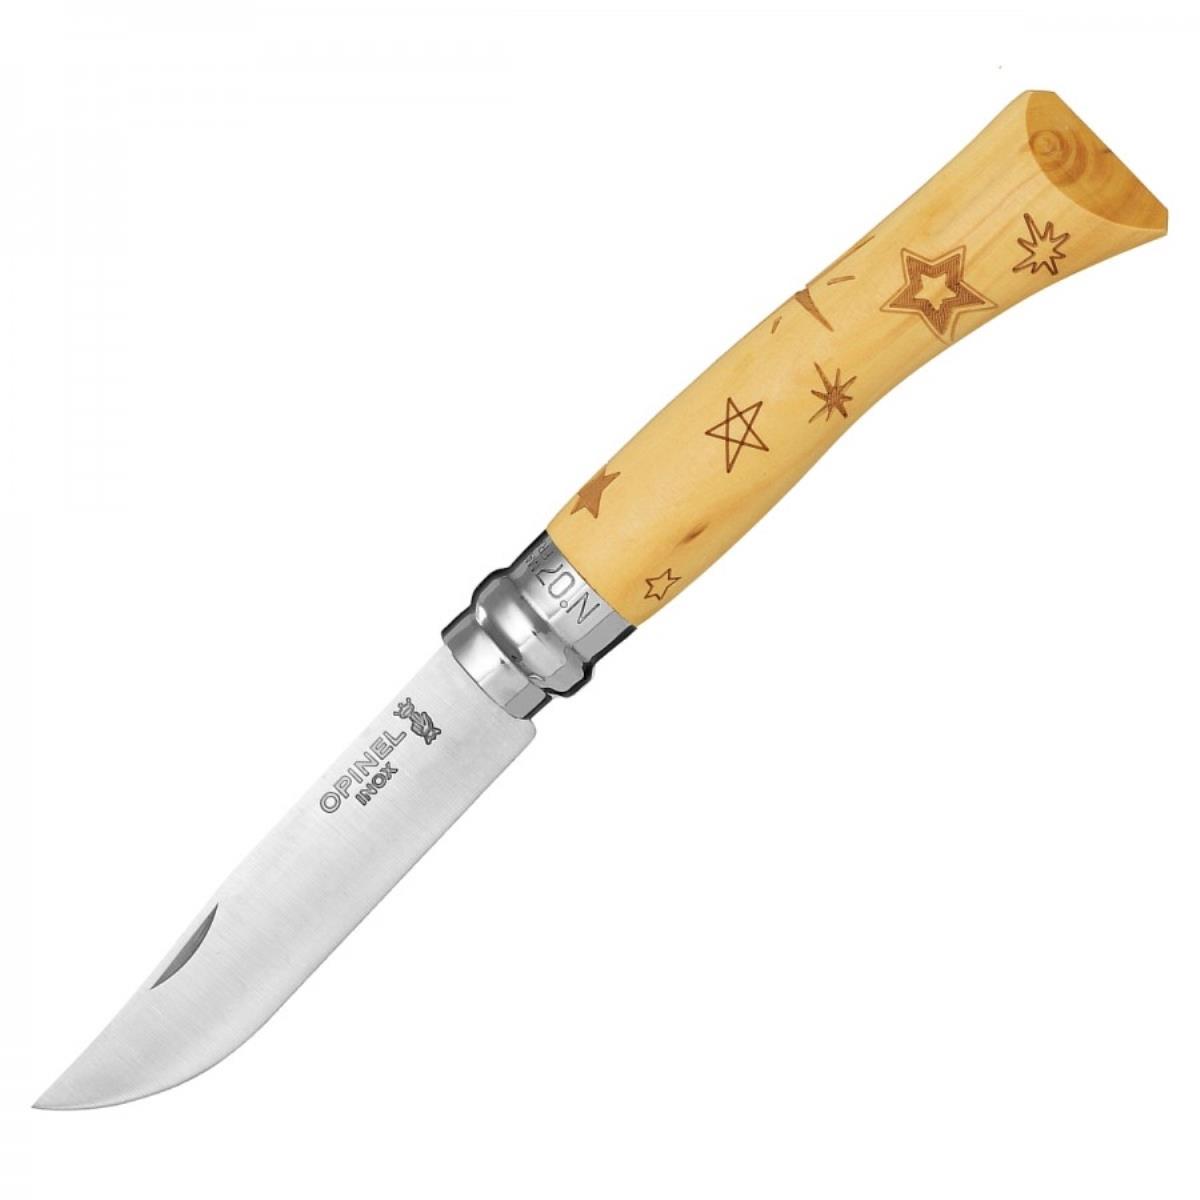 Нож №7 VRI Nature-Stars (звезды) нержавеющая сталь, рукоять самшит, длина клинка 8см OPINEL brit premium by nature консервы для собак 850 гр